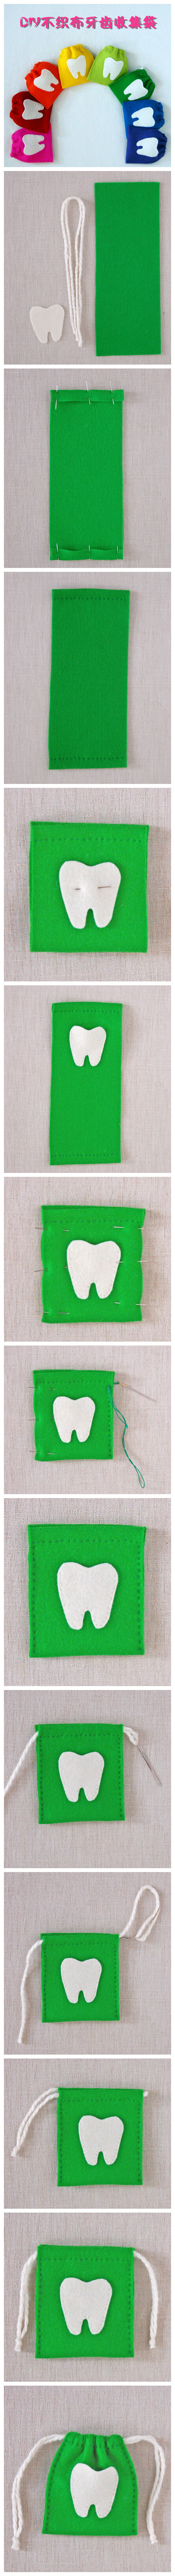 不织布小收纳袋教程~上面的牙齿也可以换成其他喜欢的图案